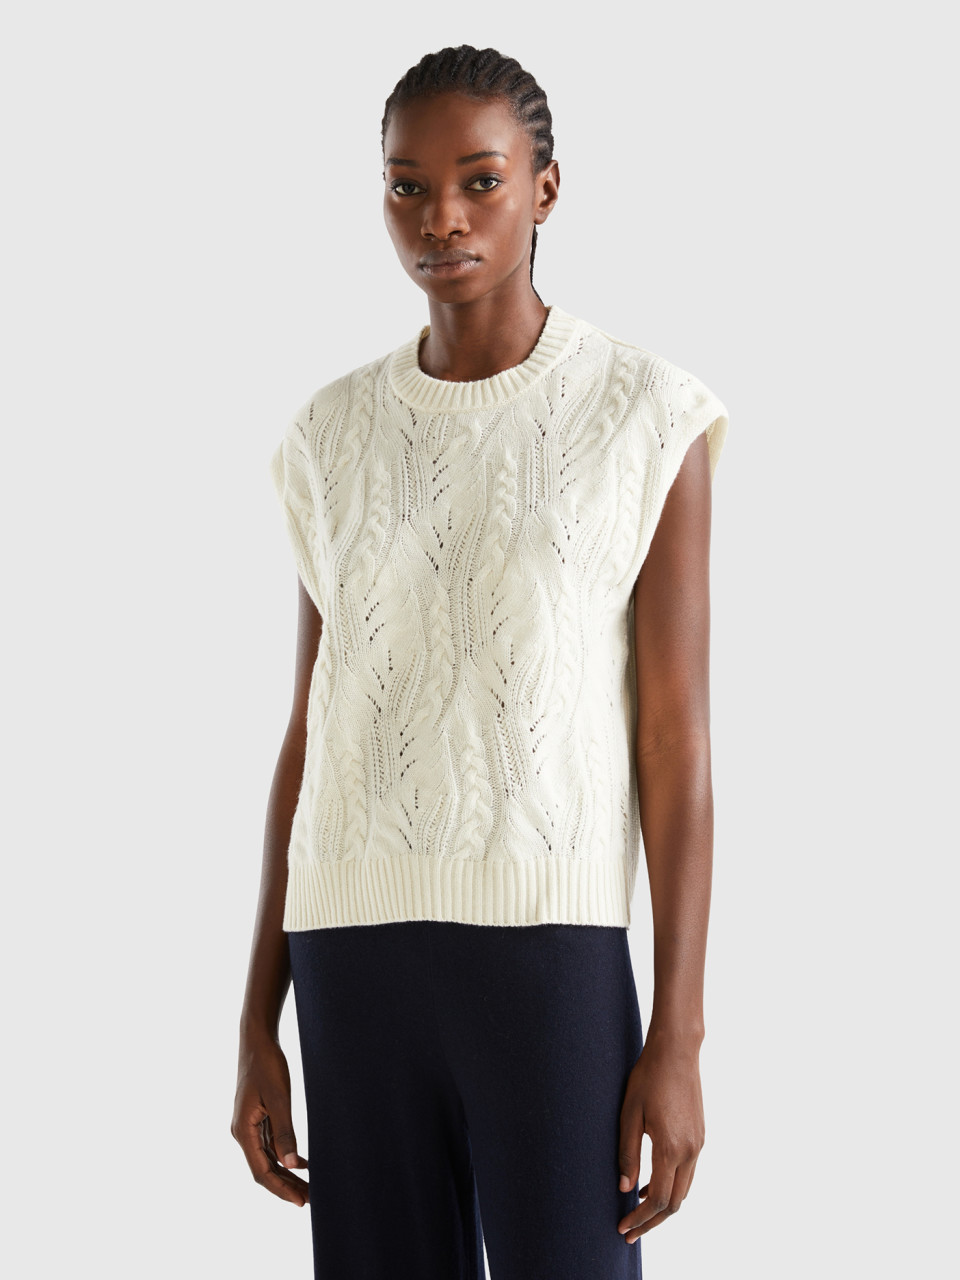 Benetton, Knit Vest In Wool Blend, Creamy White, Women